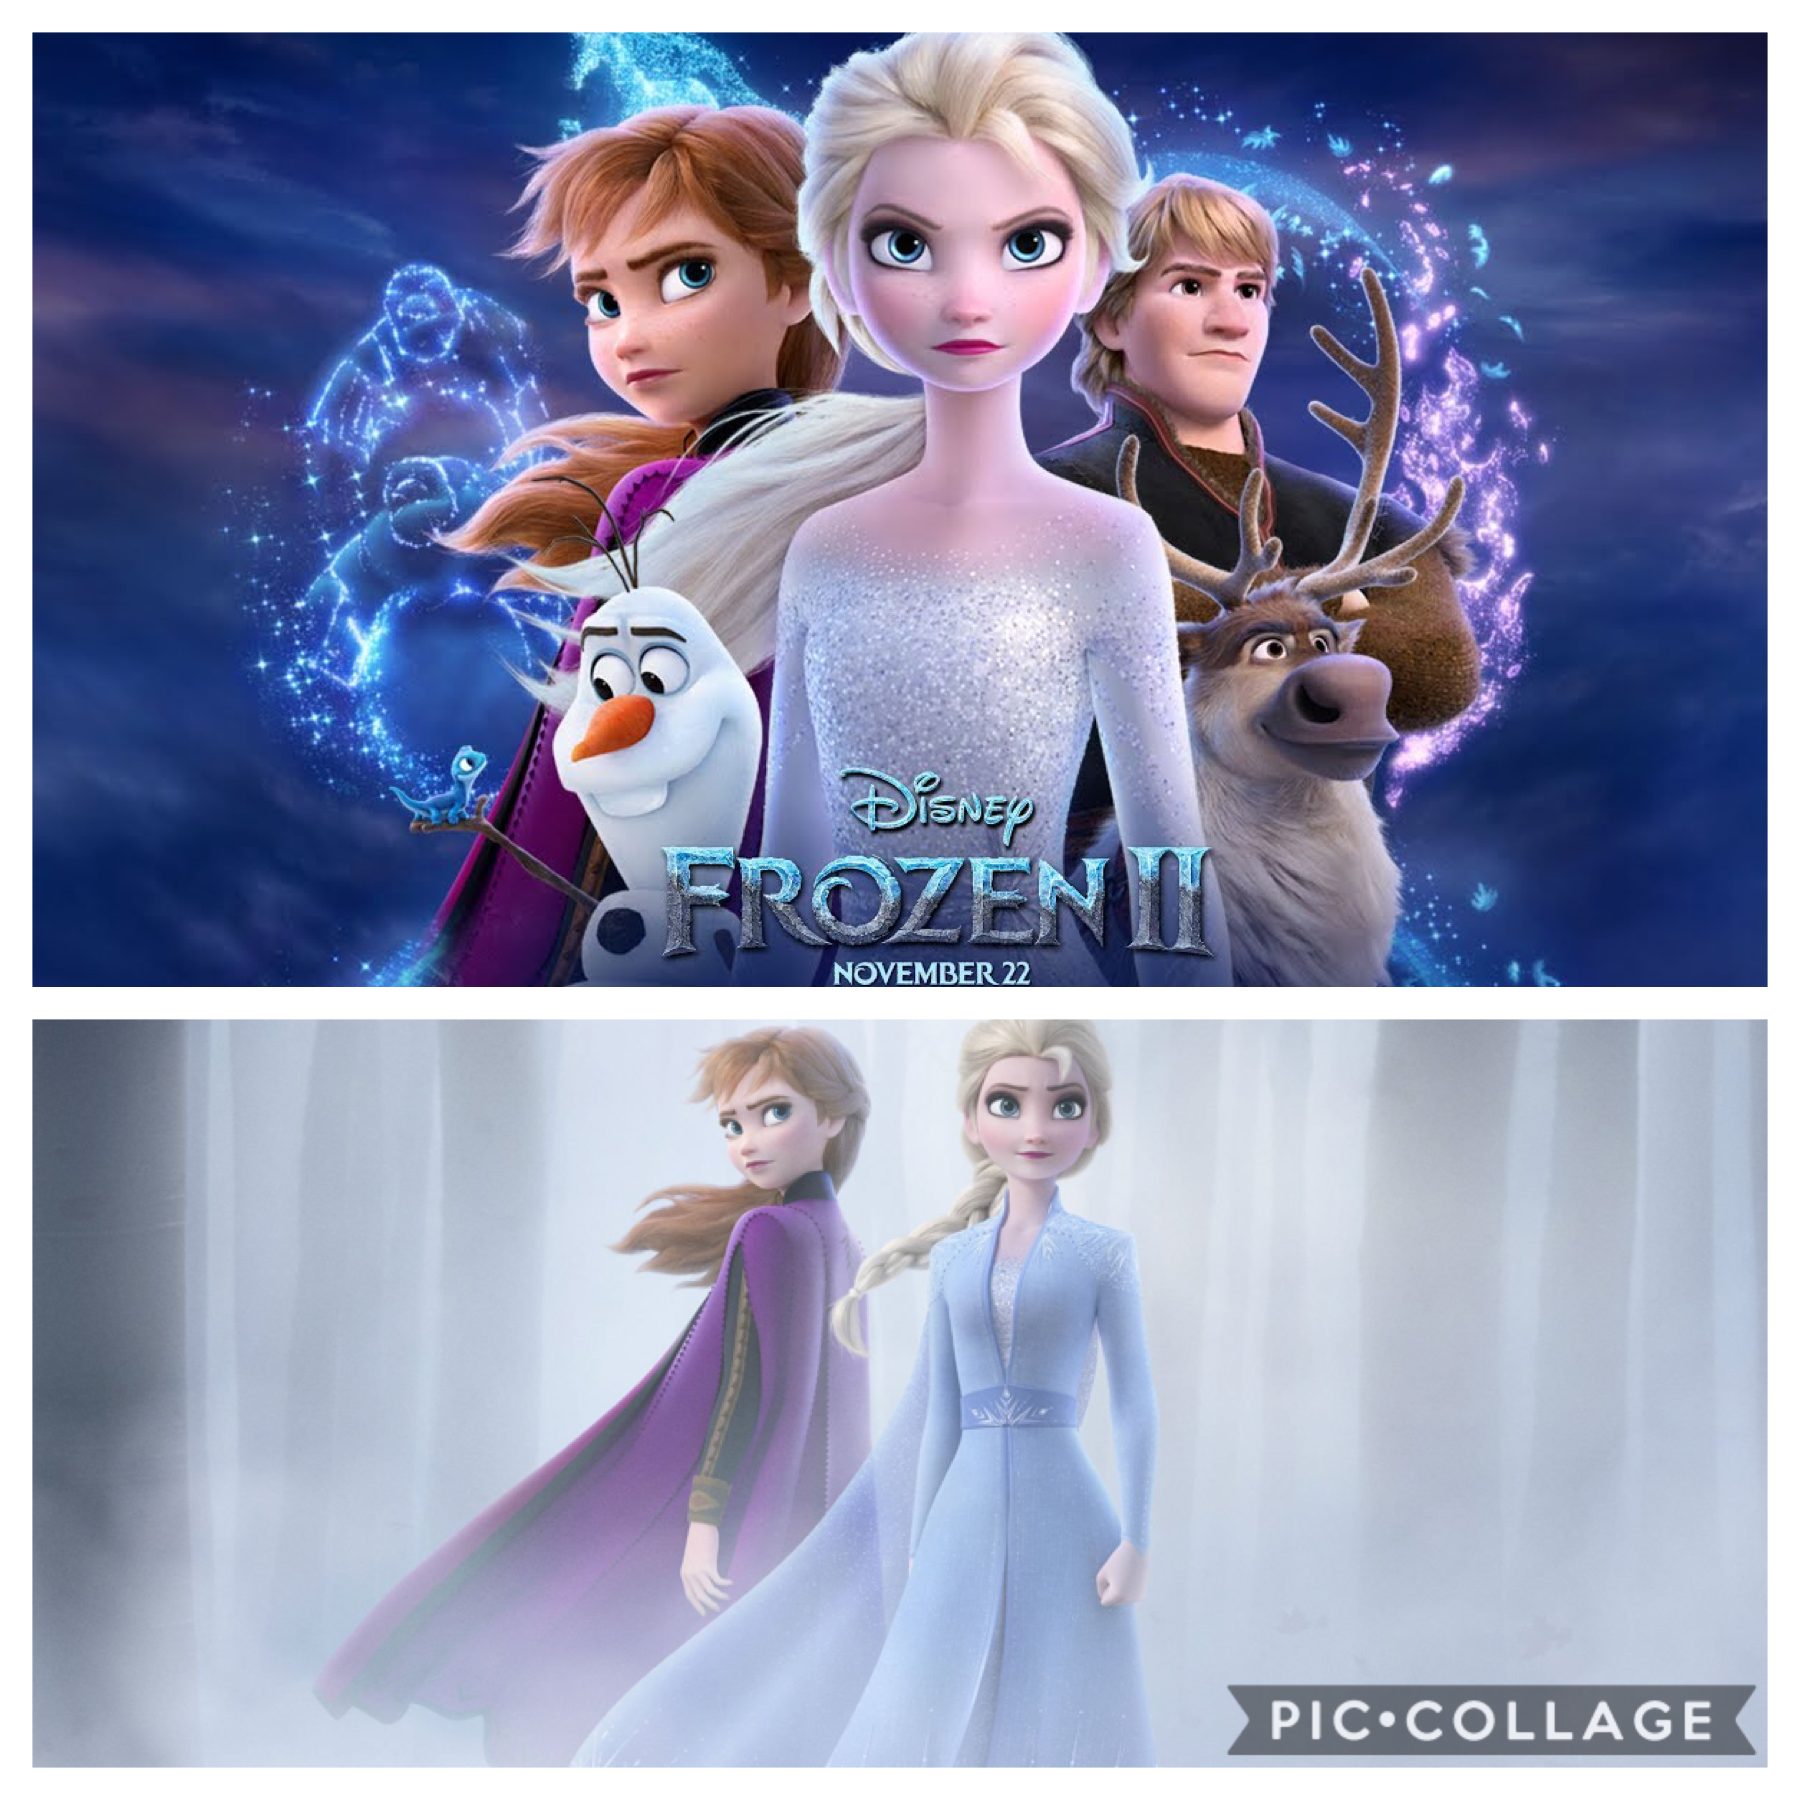 Frozen 2 was the best!!